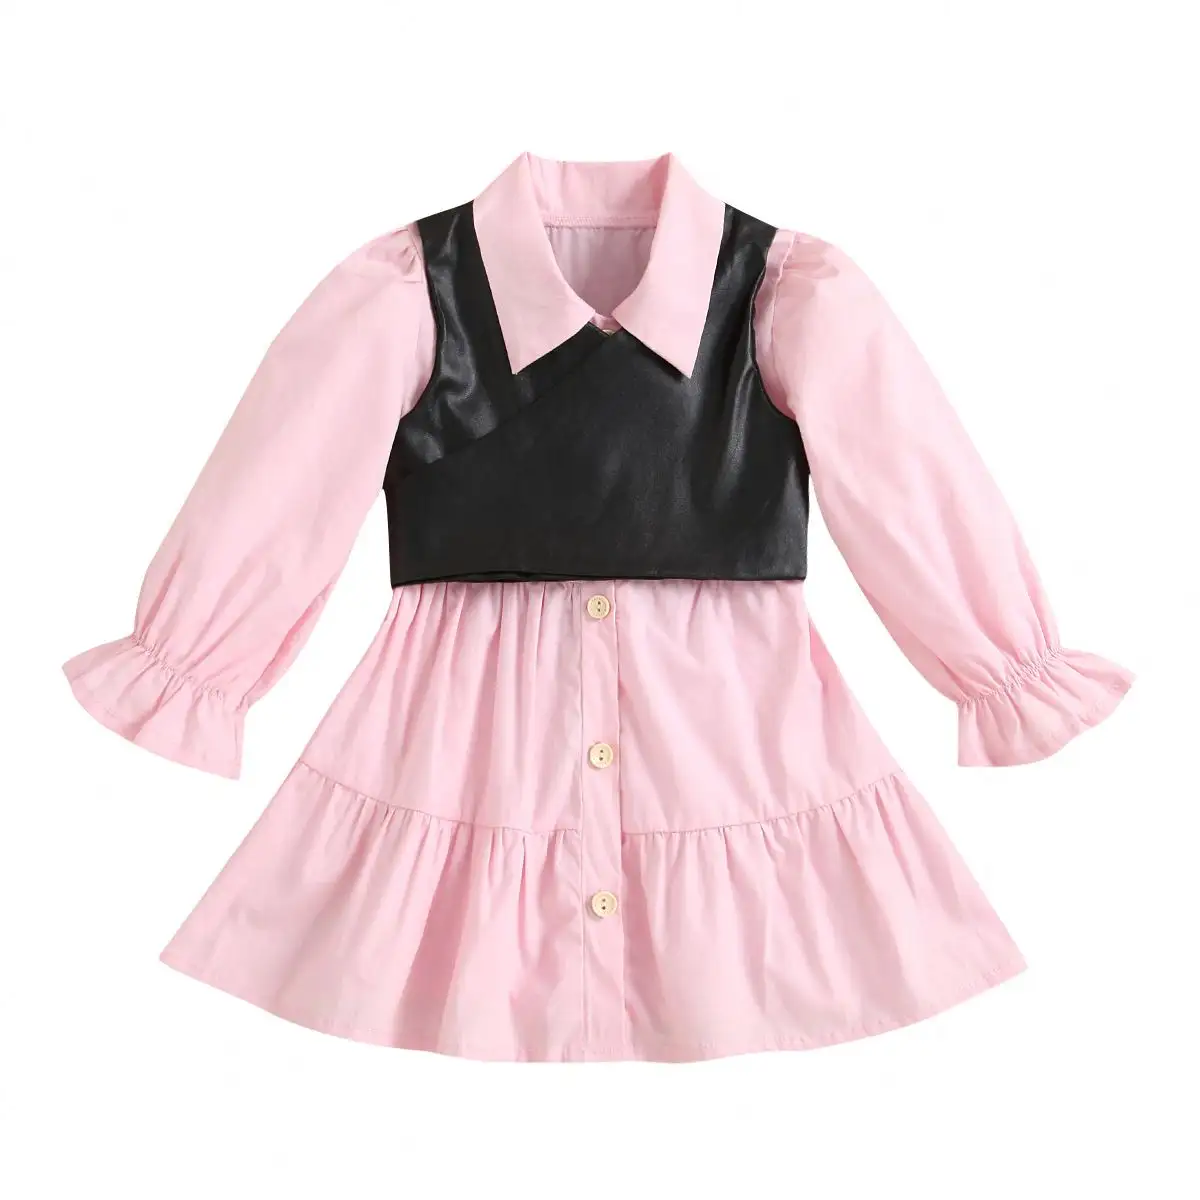 Großhandel Baby-Kindersommerkleidung 1-6 Jahre Mädchenkleider rosa Baby-Baumwollkleid mit langen Ärmeln + Kunstlederweste Babykleider